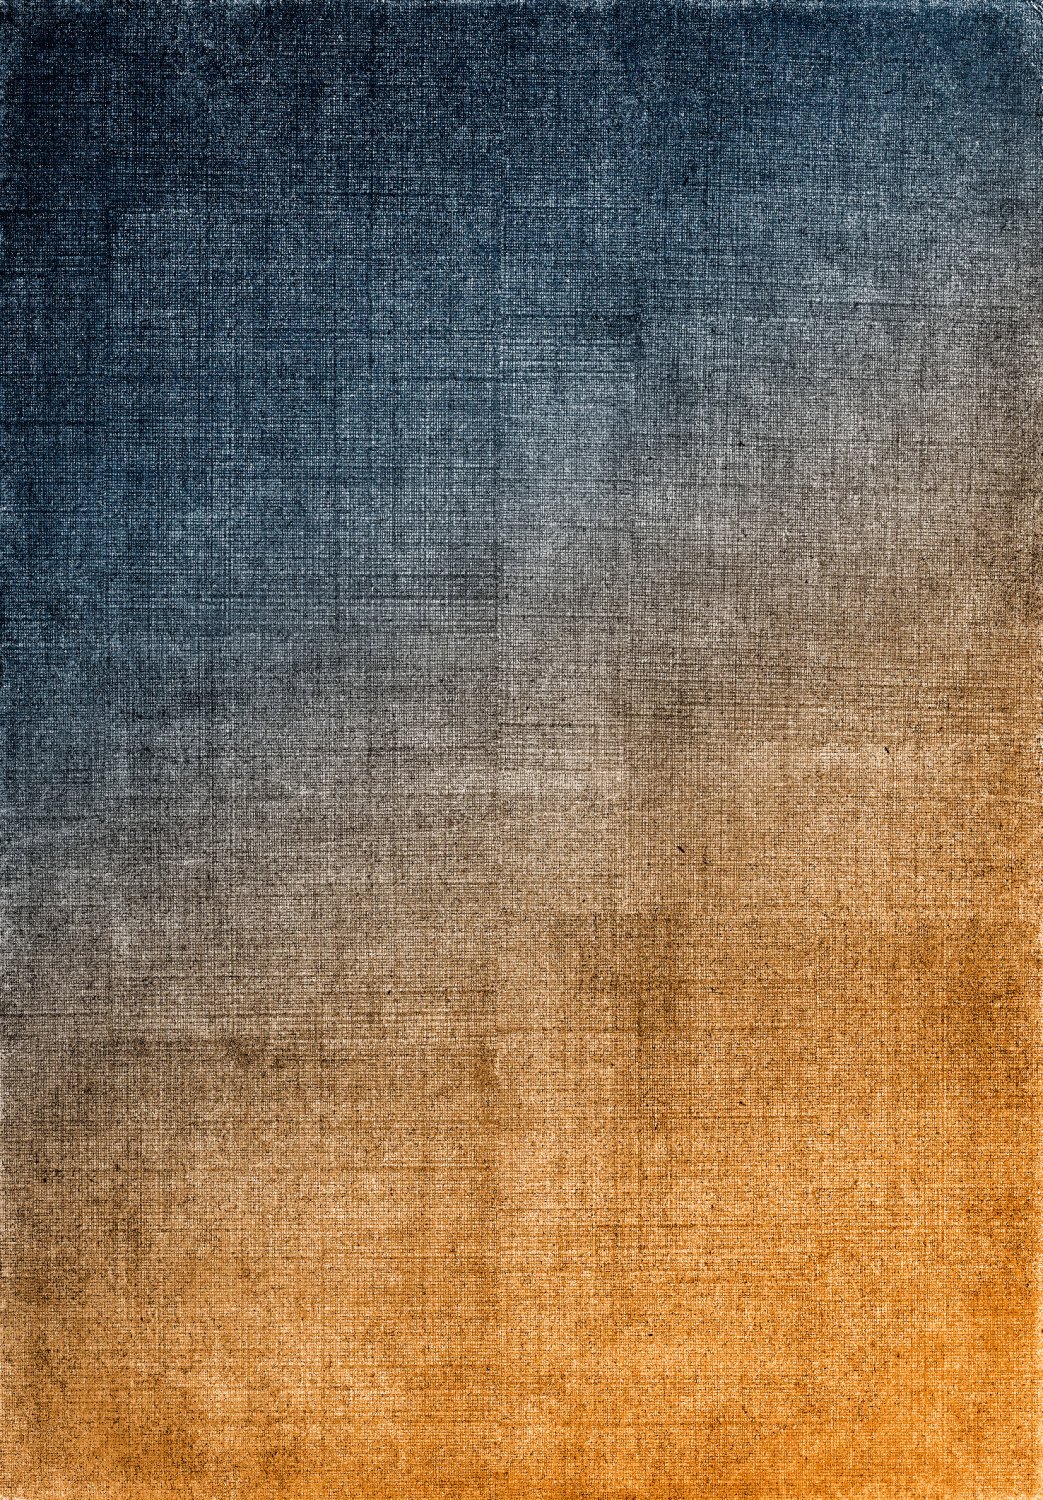 Wilton rug - Librilla (brown/blue)